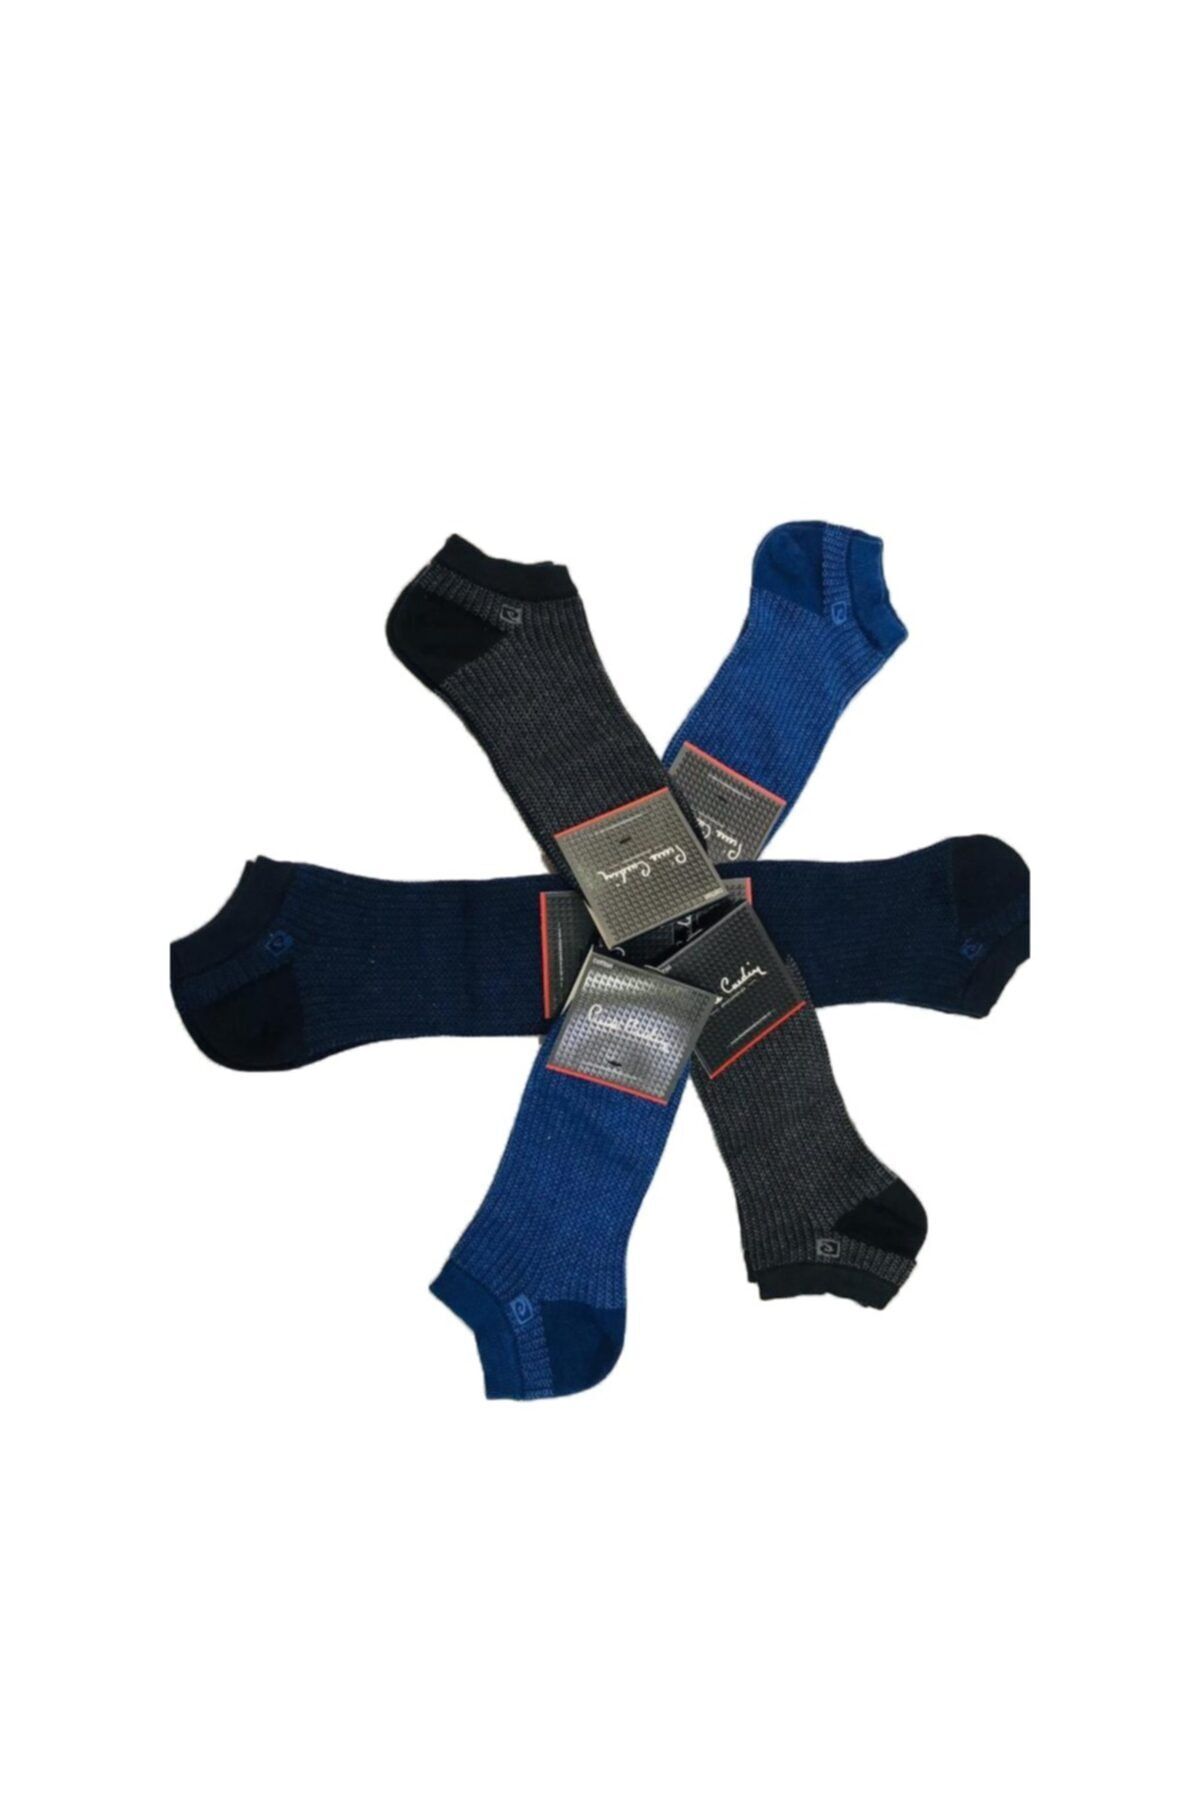 Pierre Cardin Erkek 6'lı Karışık Renk Pamuk Patik Çorap